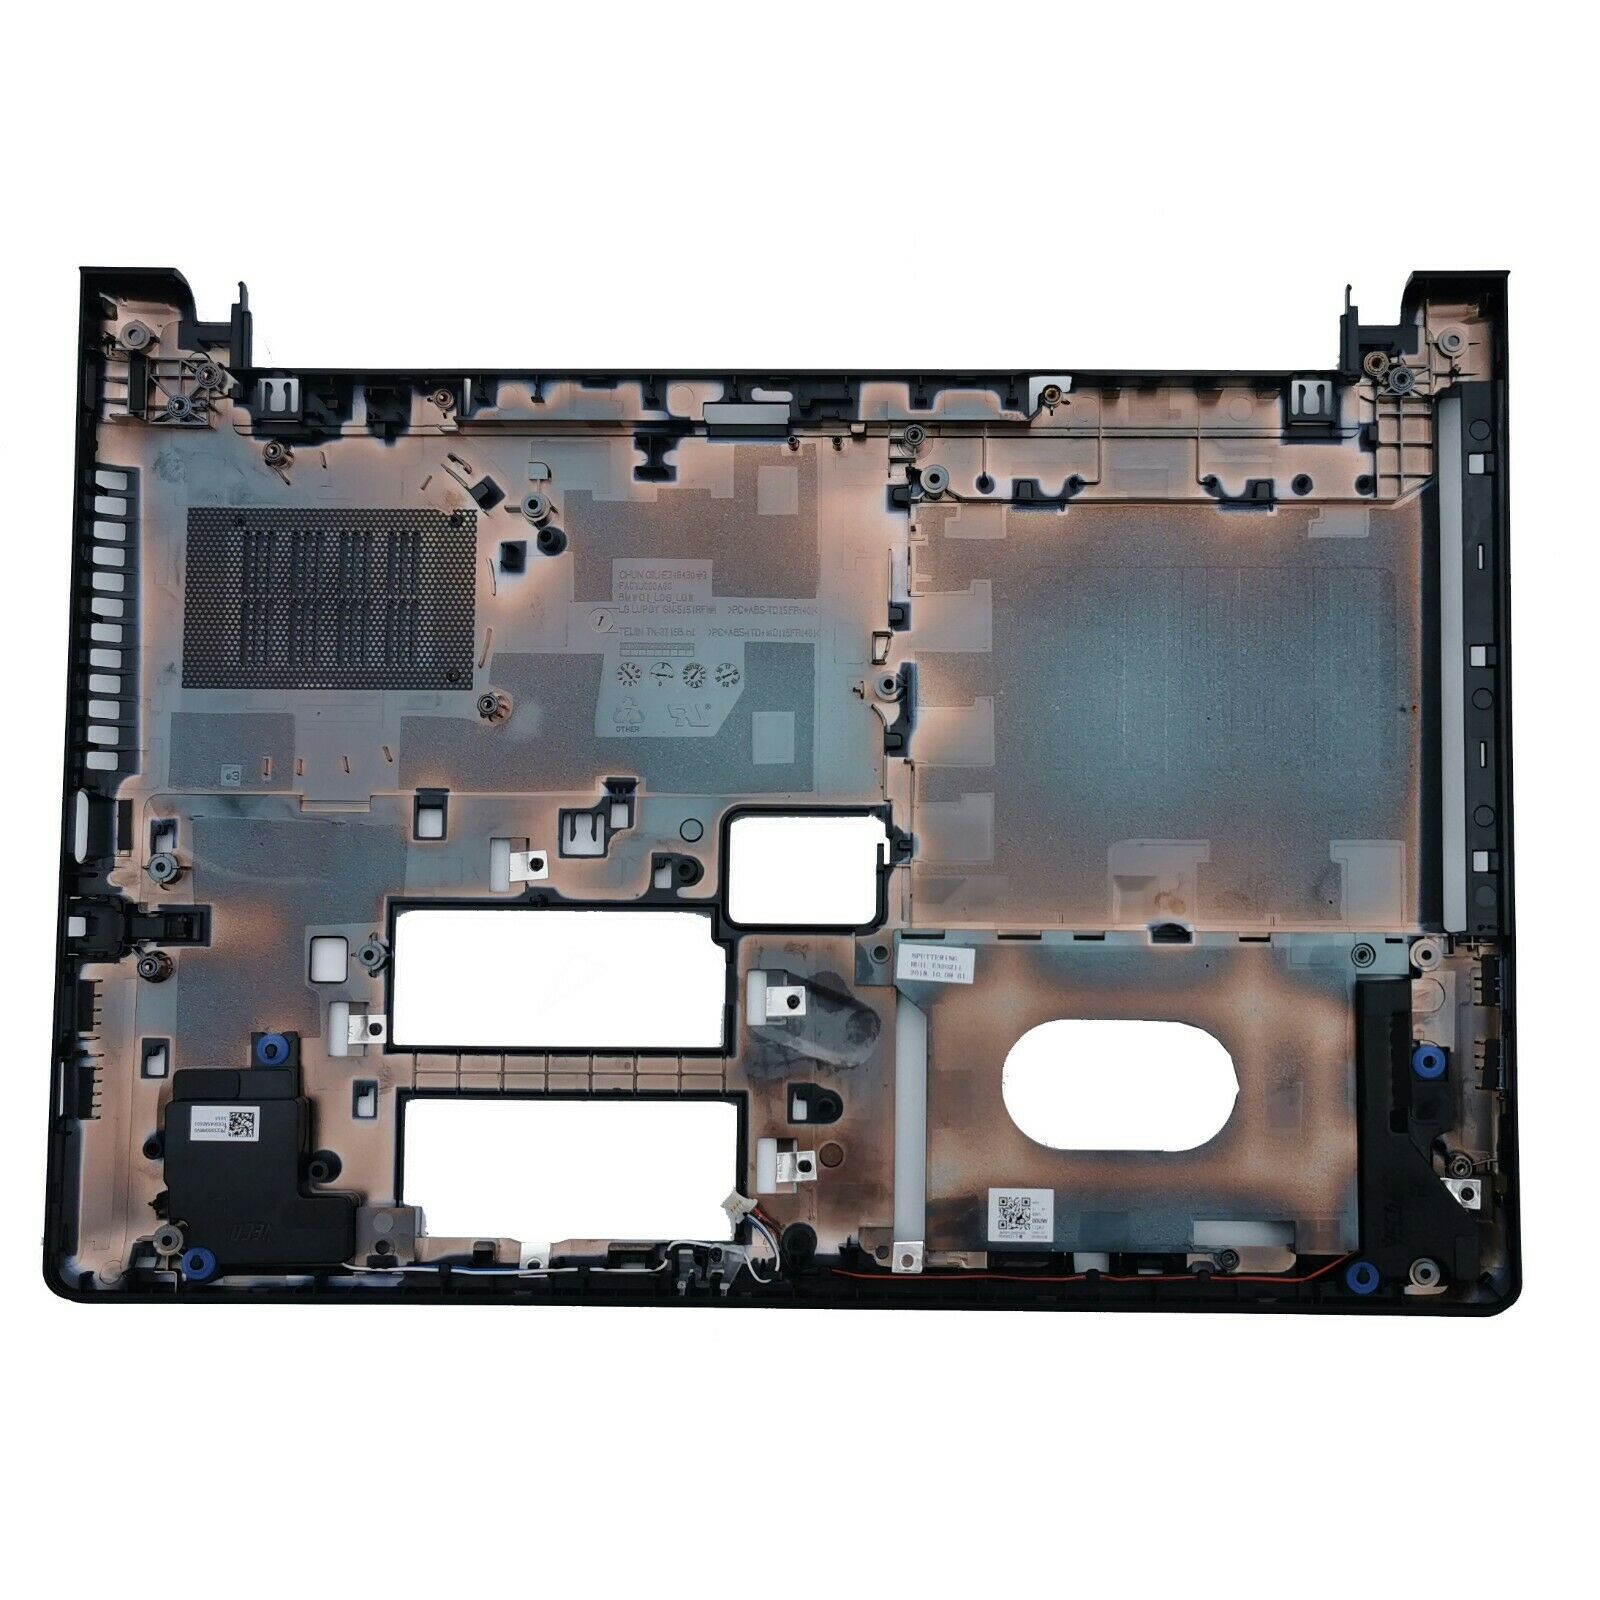 Yeni Lenovo IdeaPad 300-14 300-14ibr 300-14isk düşük alt taban durumda kılıfı 3 Siparişler